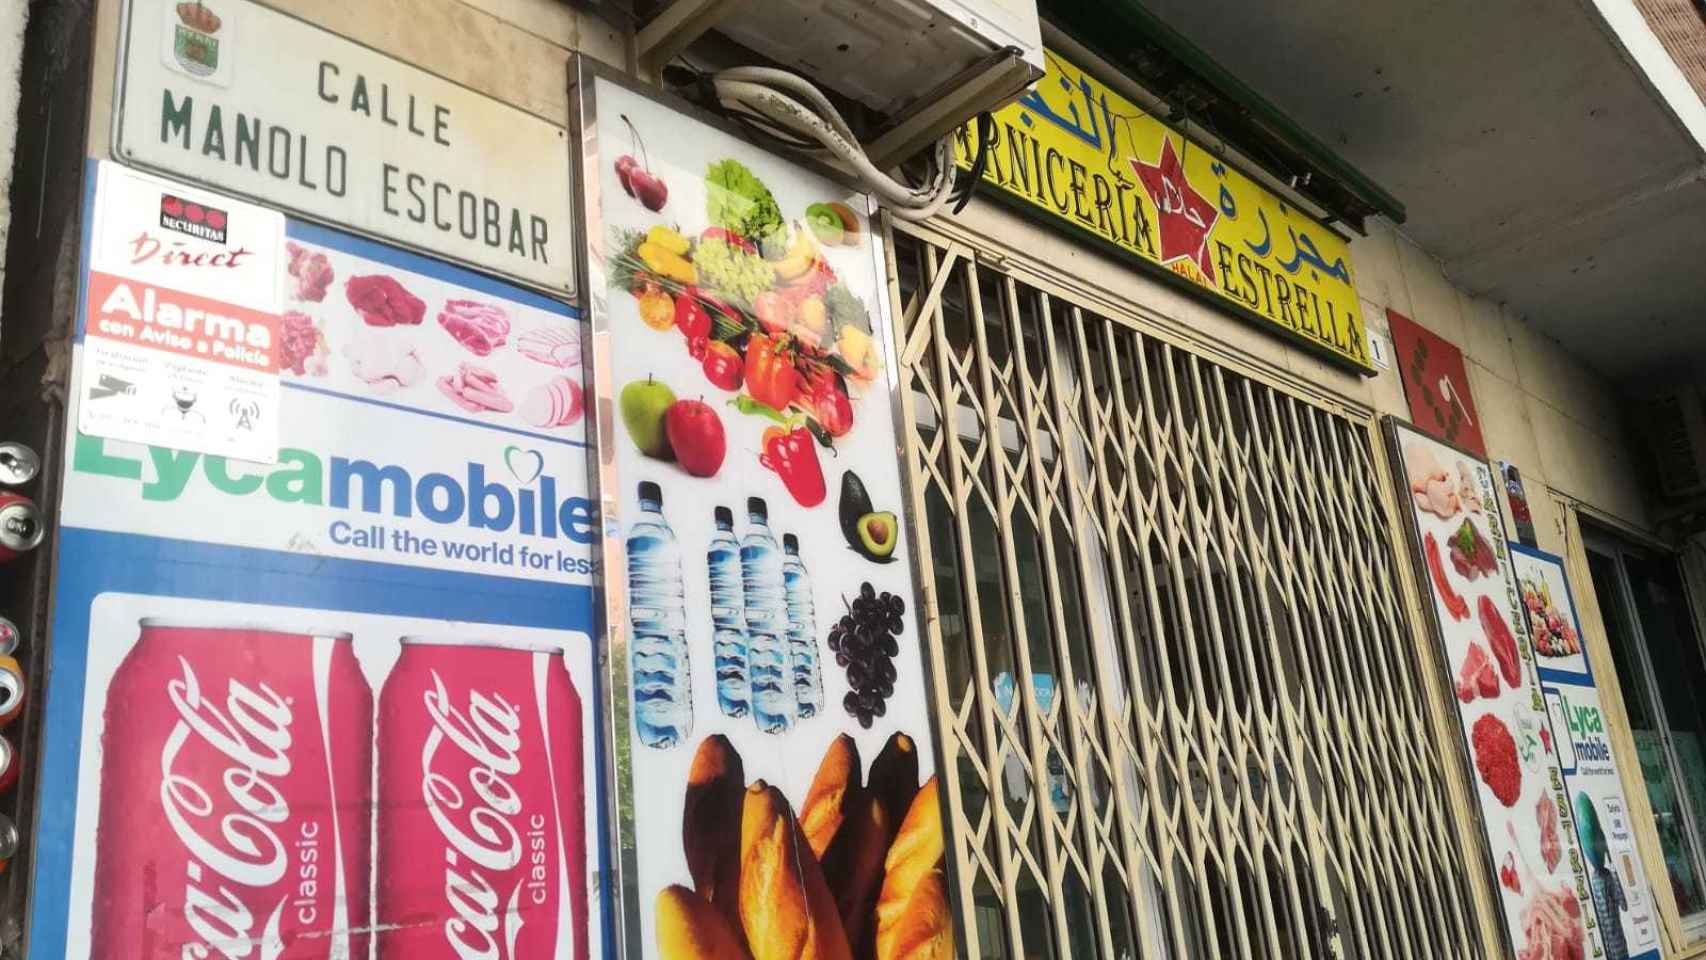 Inicio de la calle Manolo Escobar de El Ejido (Almería). Justo en la esquina hay una carnicería de un inmigrante marroquí.